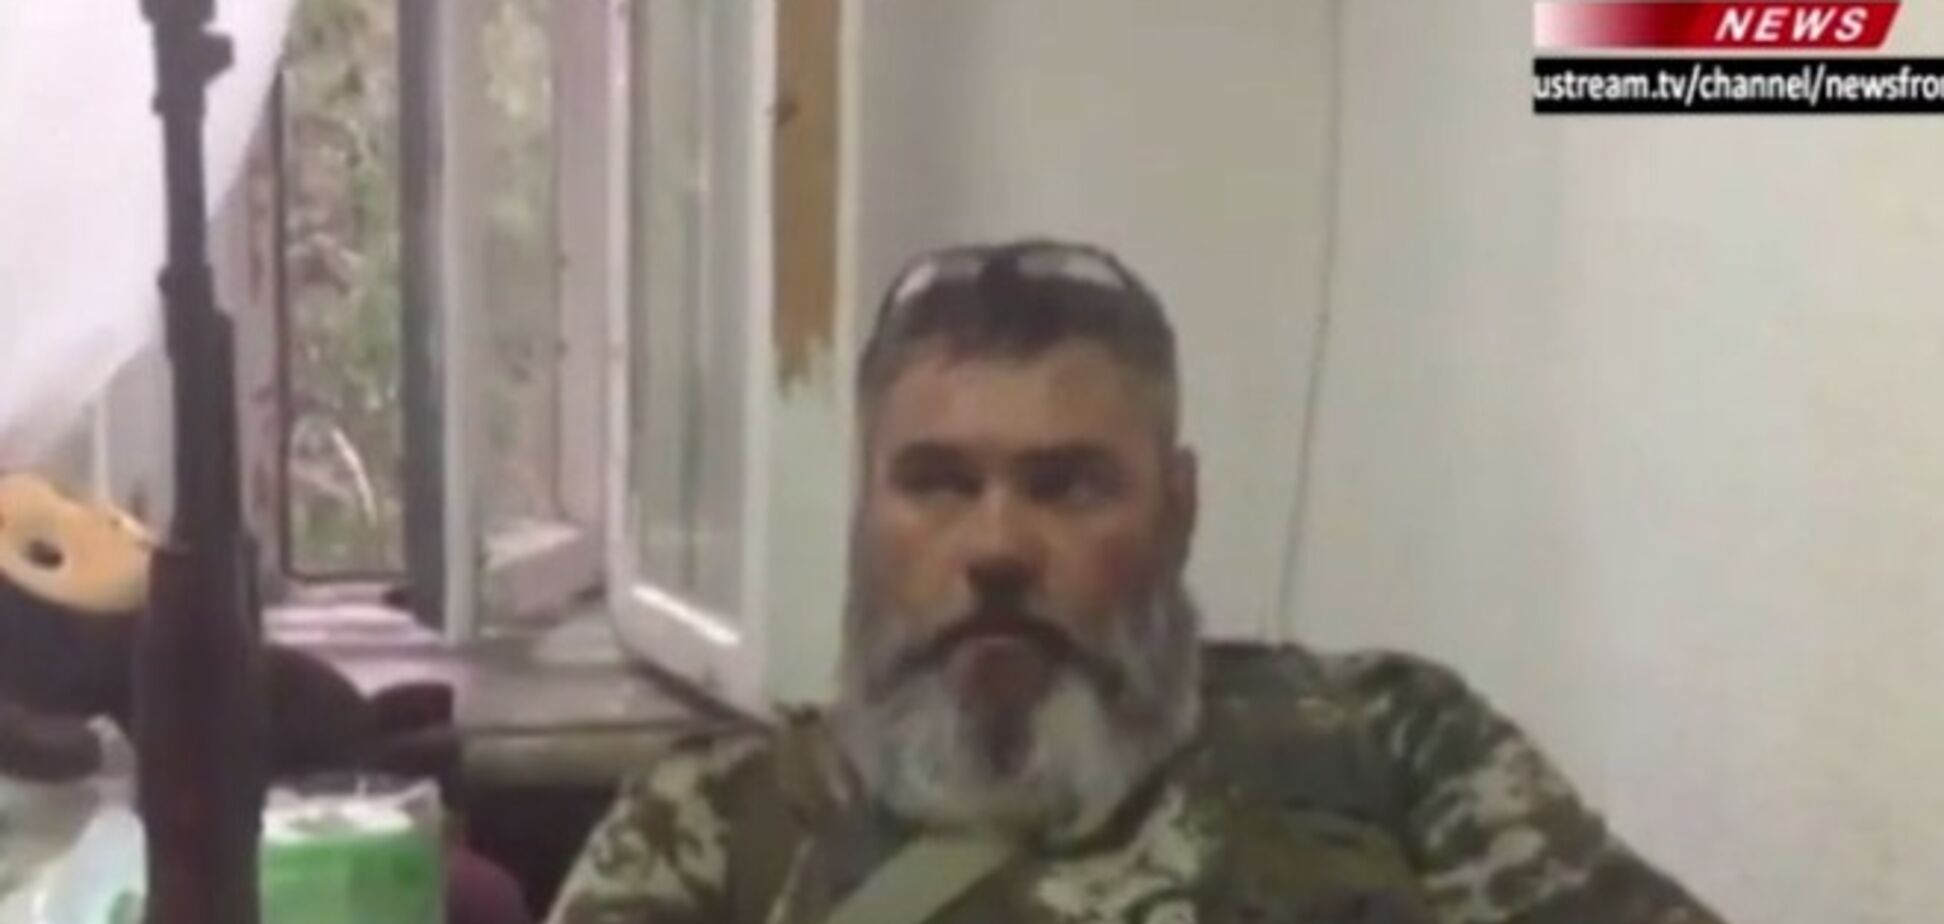 Терорист Бабай пообіцяв через кілька днів 'взяти Київ'